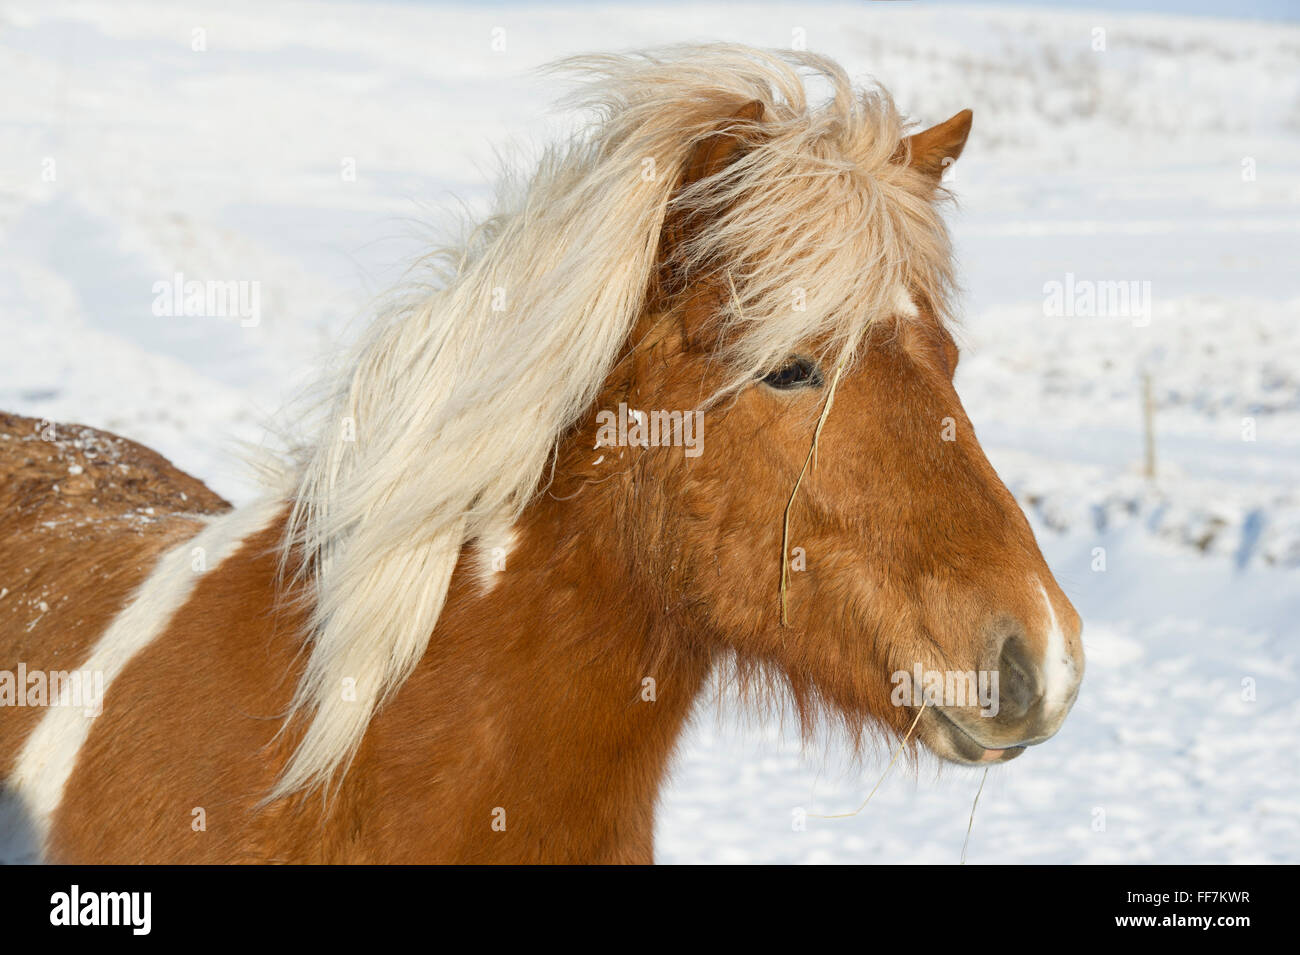 Un cavallo islandese (pony) nella neve i campi coperti durante il periodo invernale Foto Stock